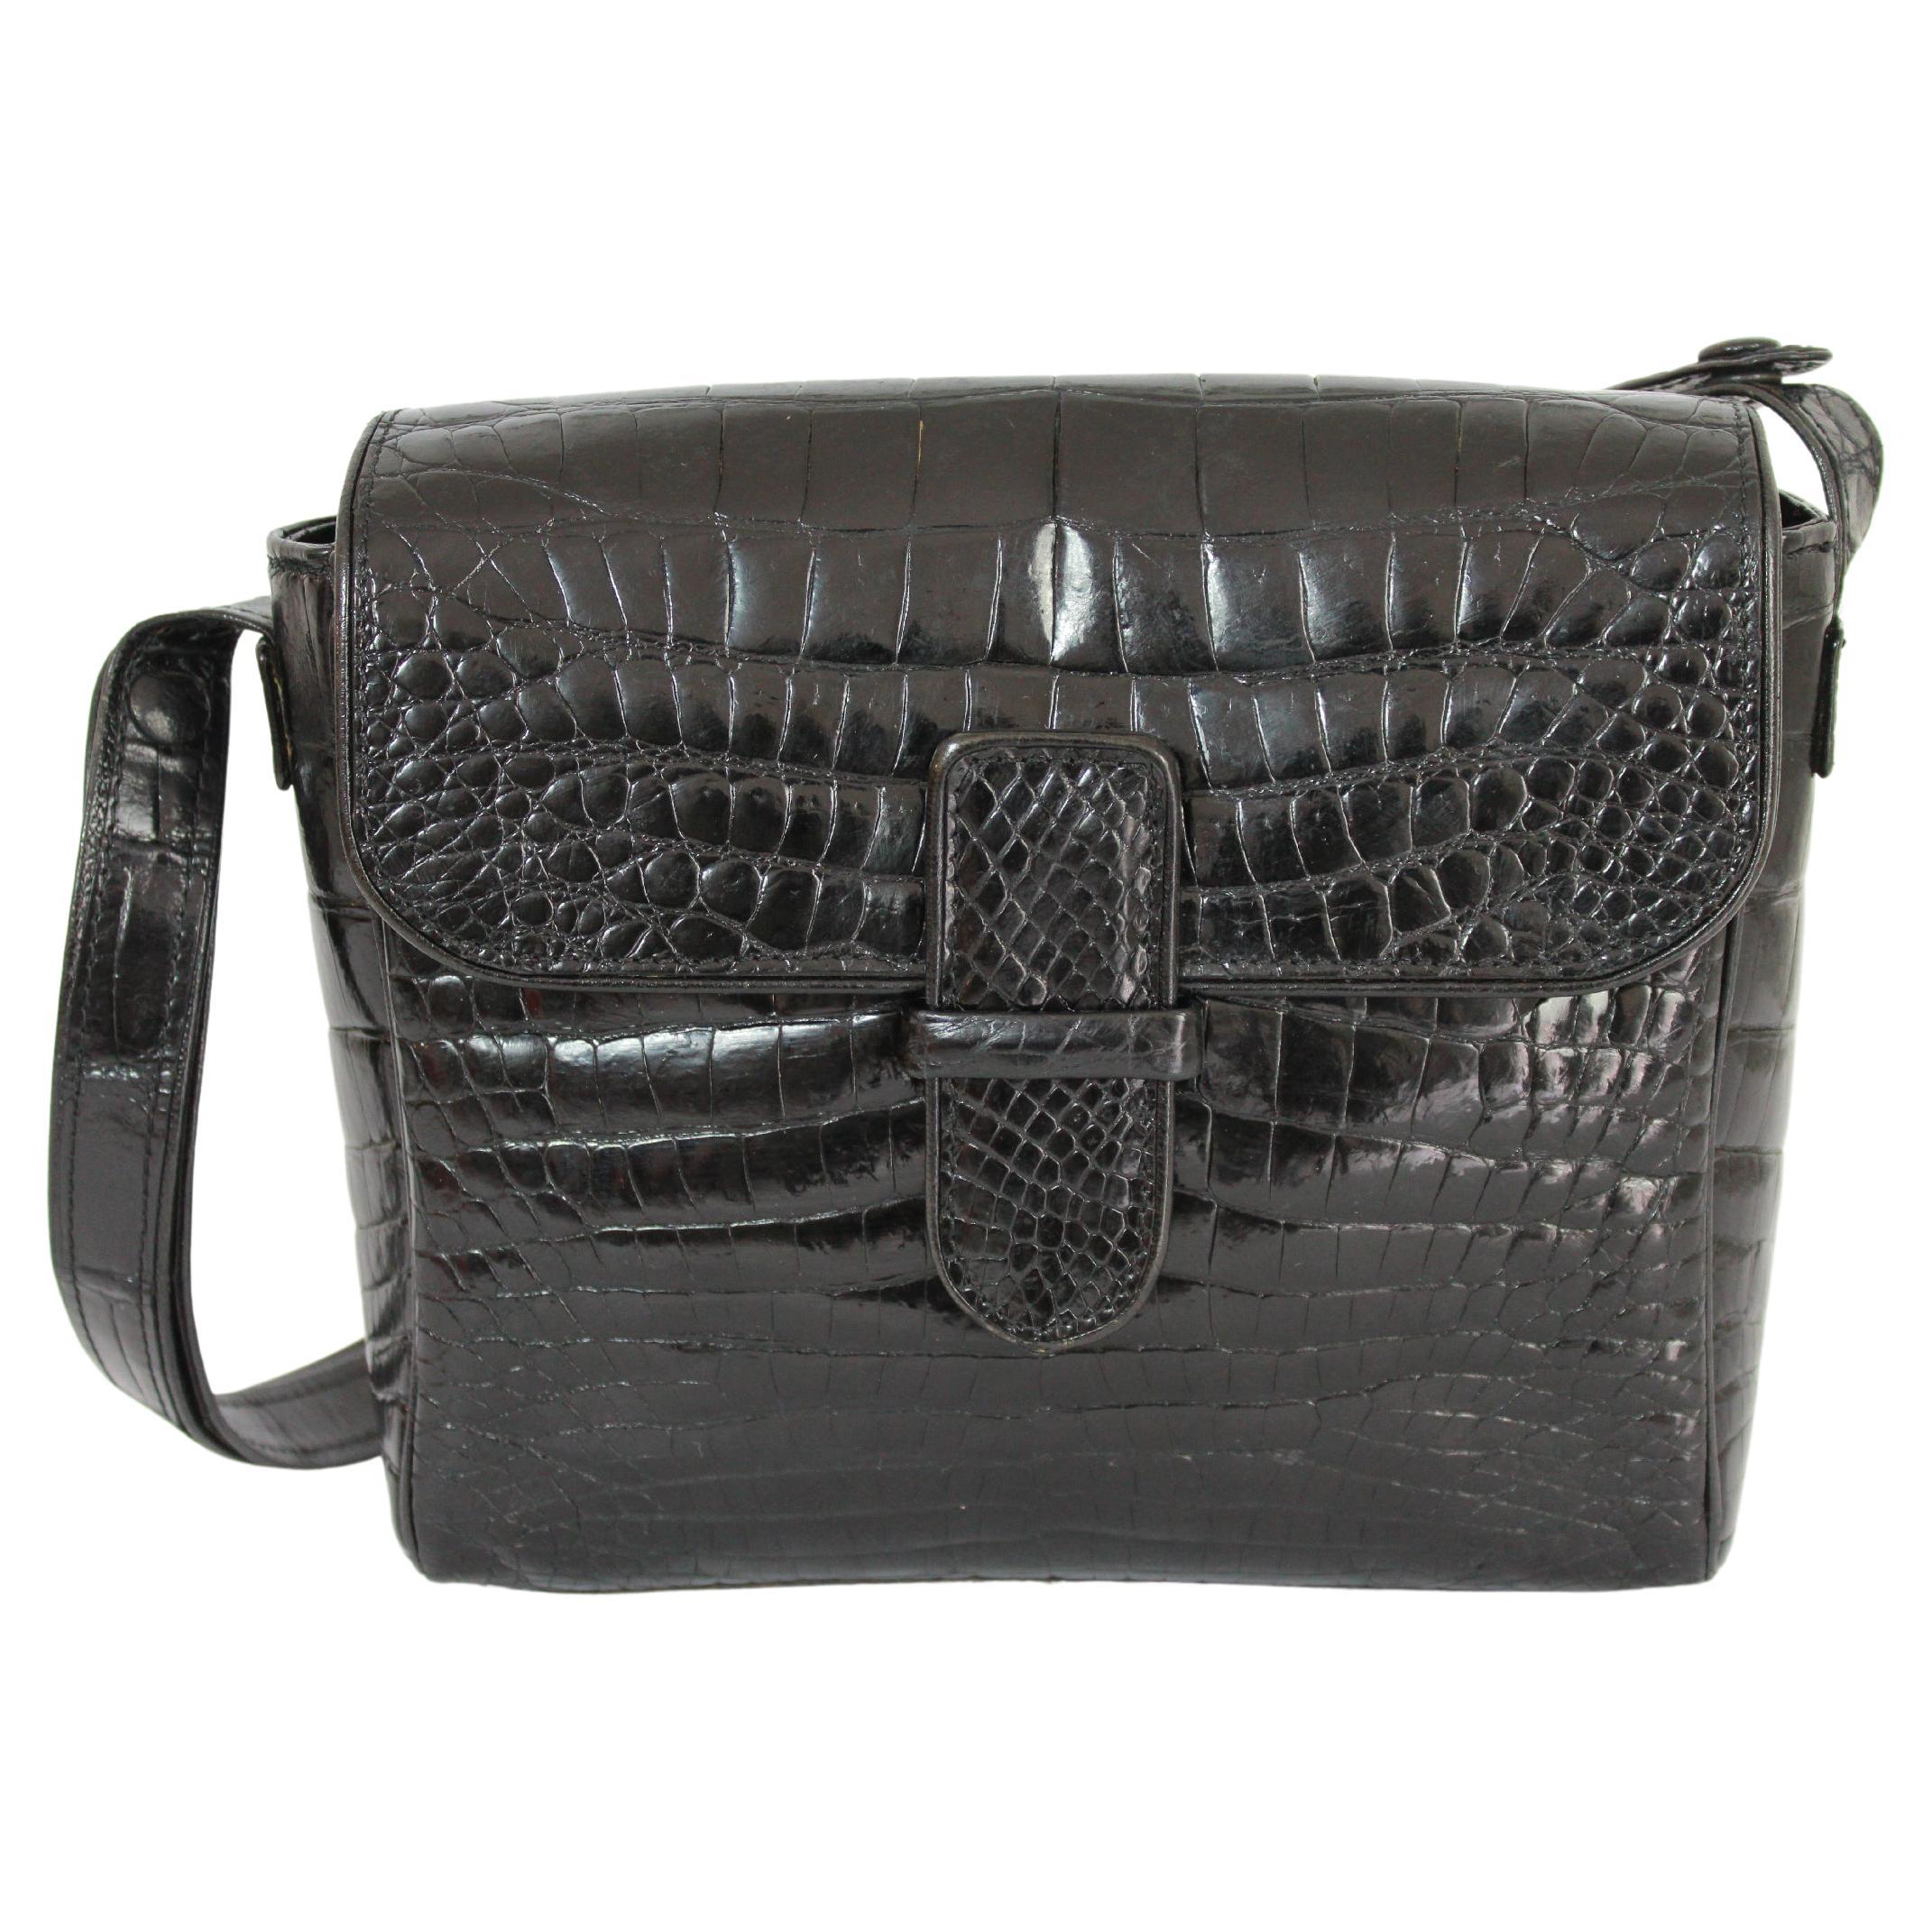 Fendi Black Leather Crocodile Print Shoulder Bag 1970s Vintage For Sale